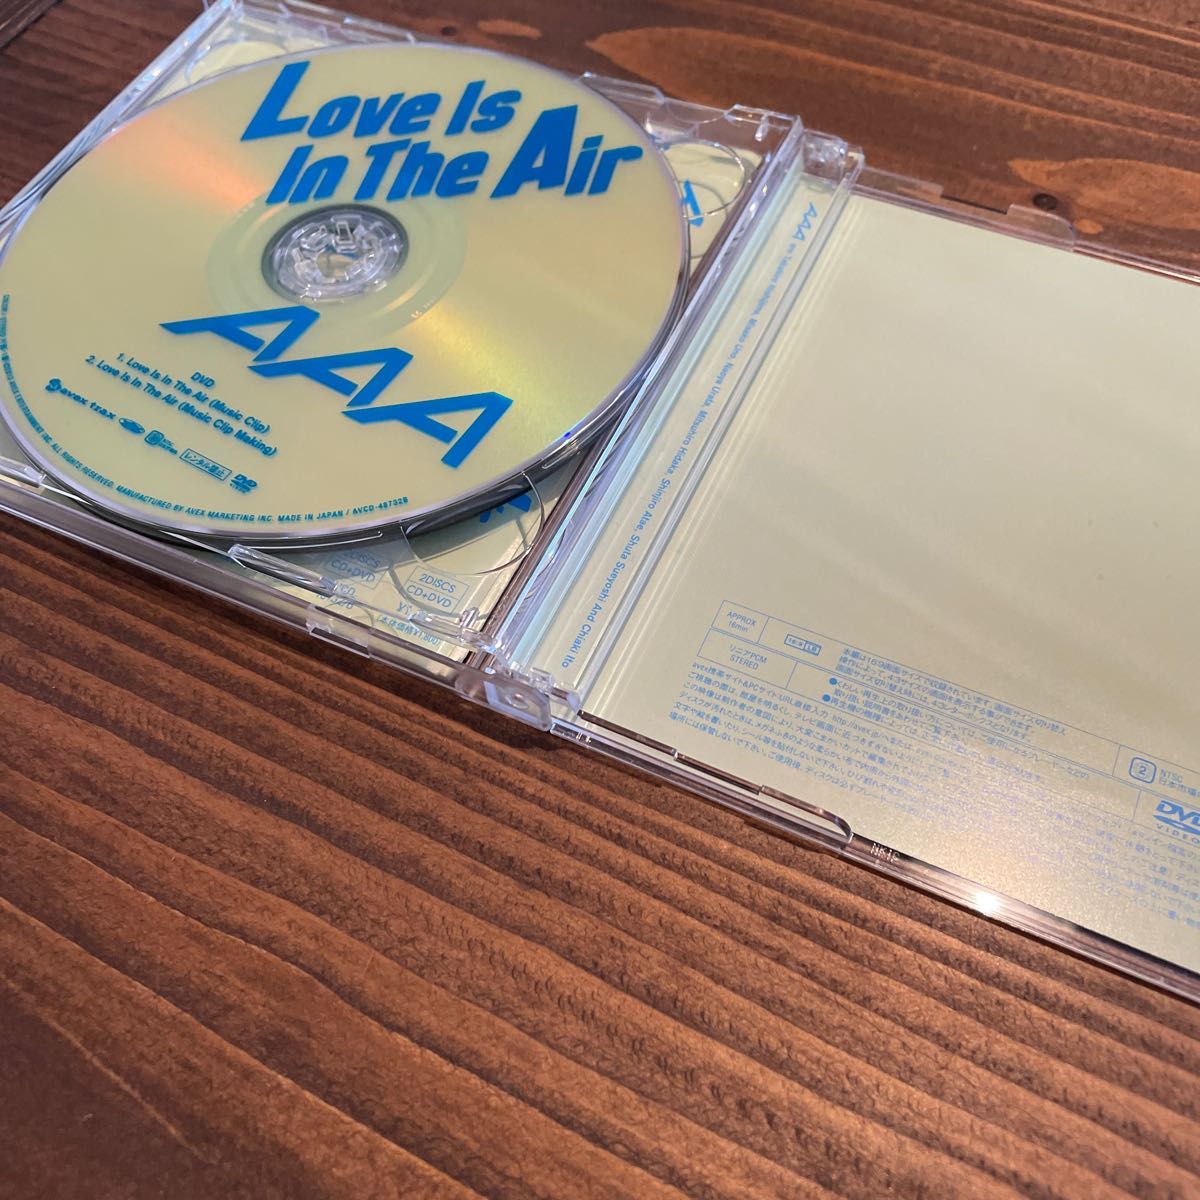 AAA CD+DVD/Love Is In The Air ジャケットA 13/6/26発売 オリコン加盟店